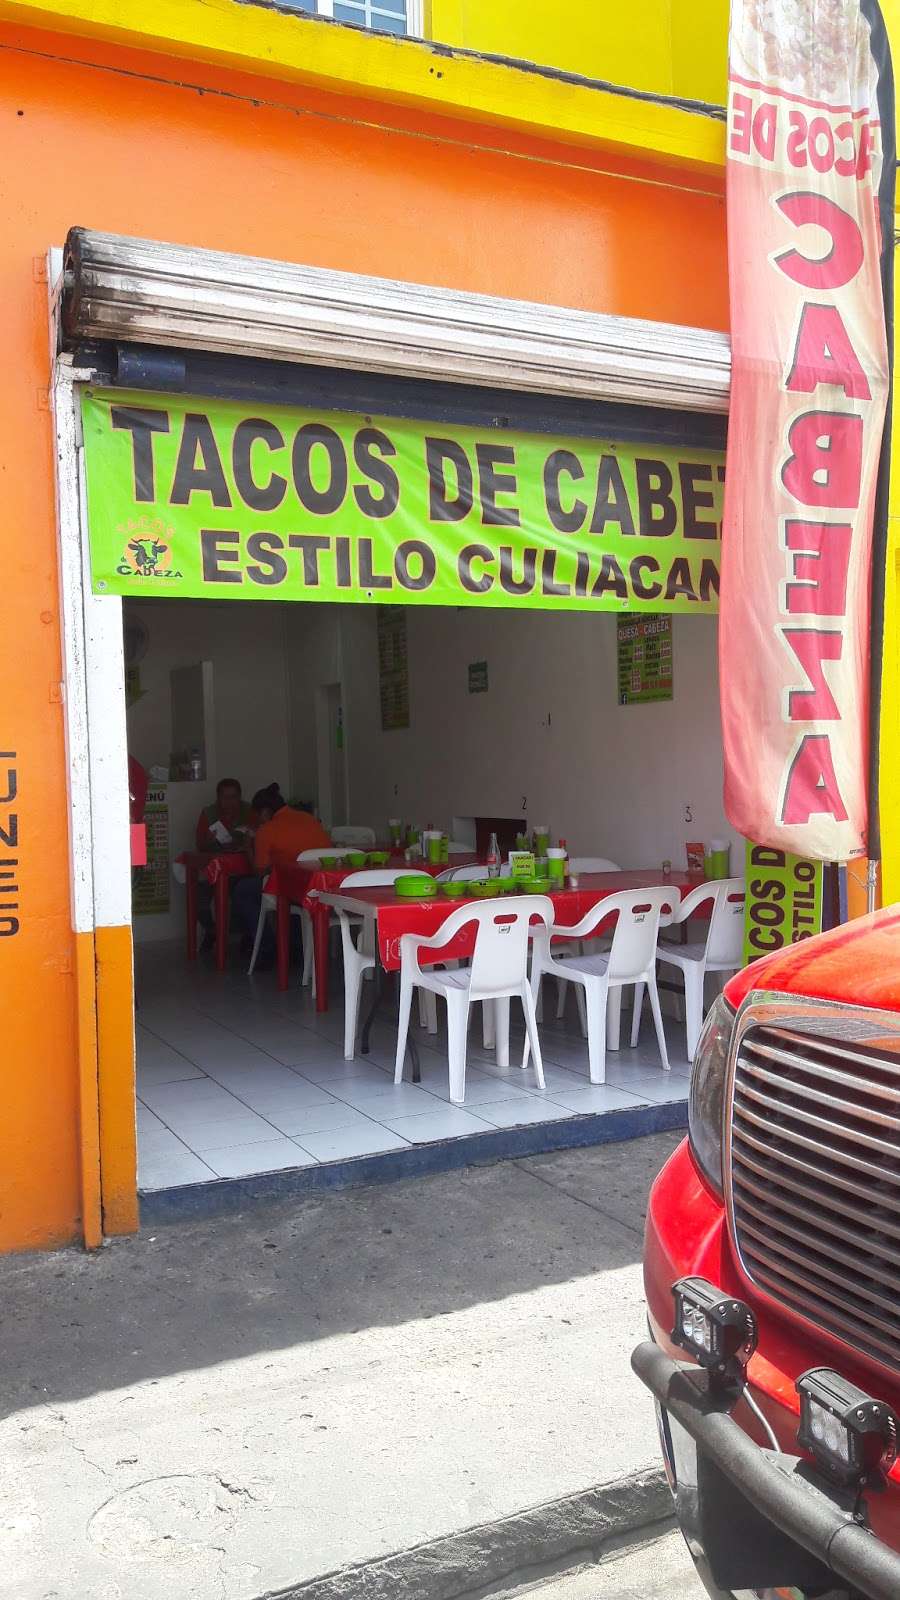 Tacos de cabeza estilo Culiacán | Blvd. Lázaro Cárdenas, norte, 22457 Tijuana, B.C., Mexico | Phone: 664 524 6609